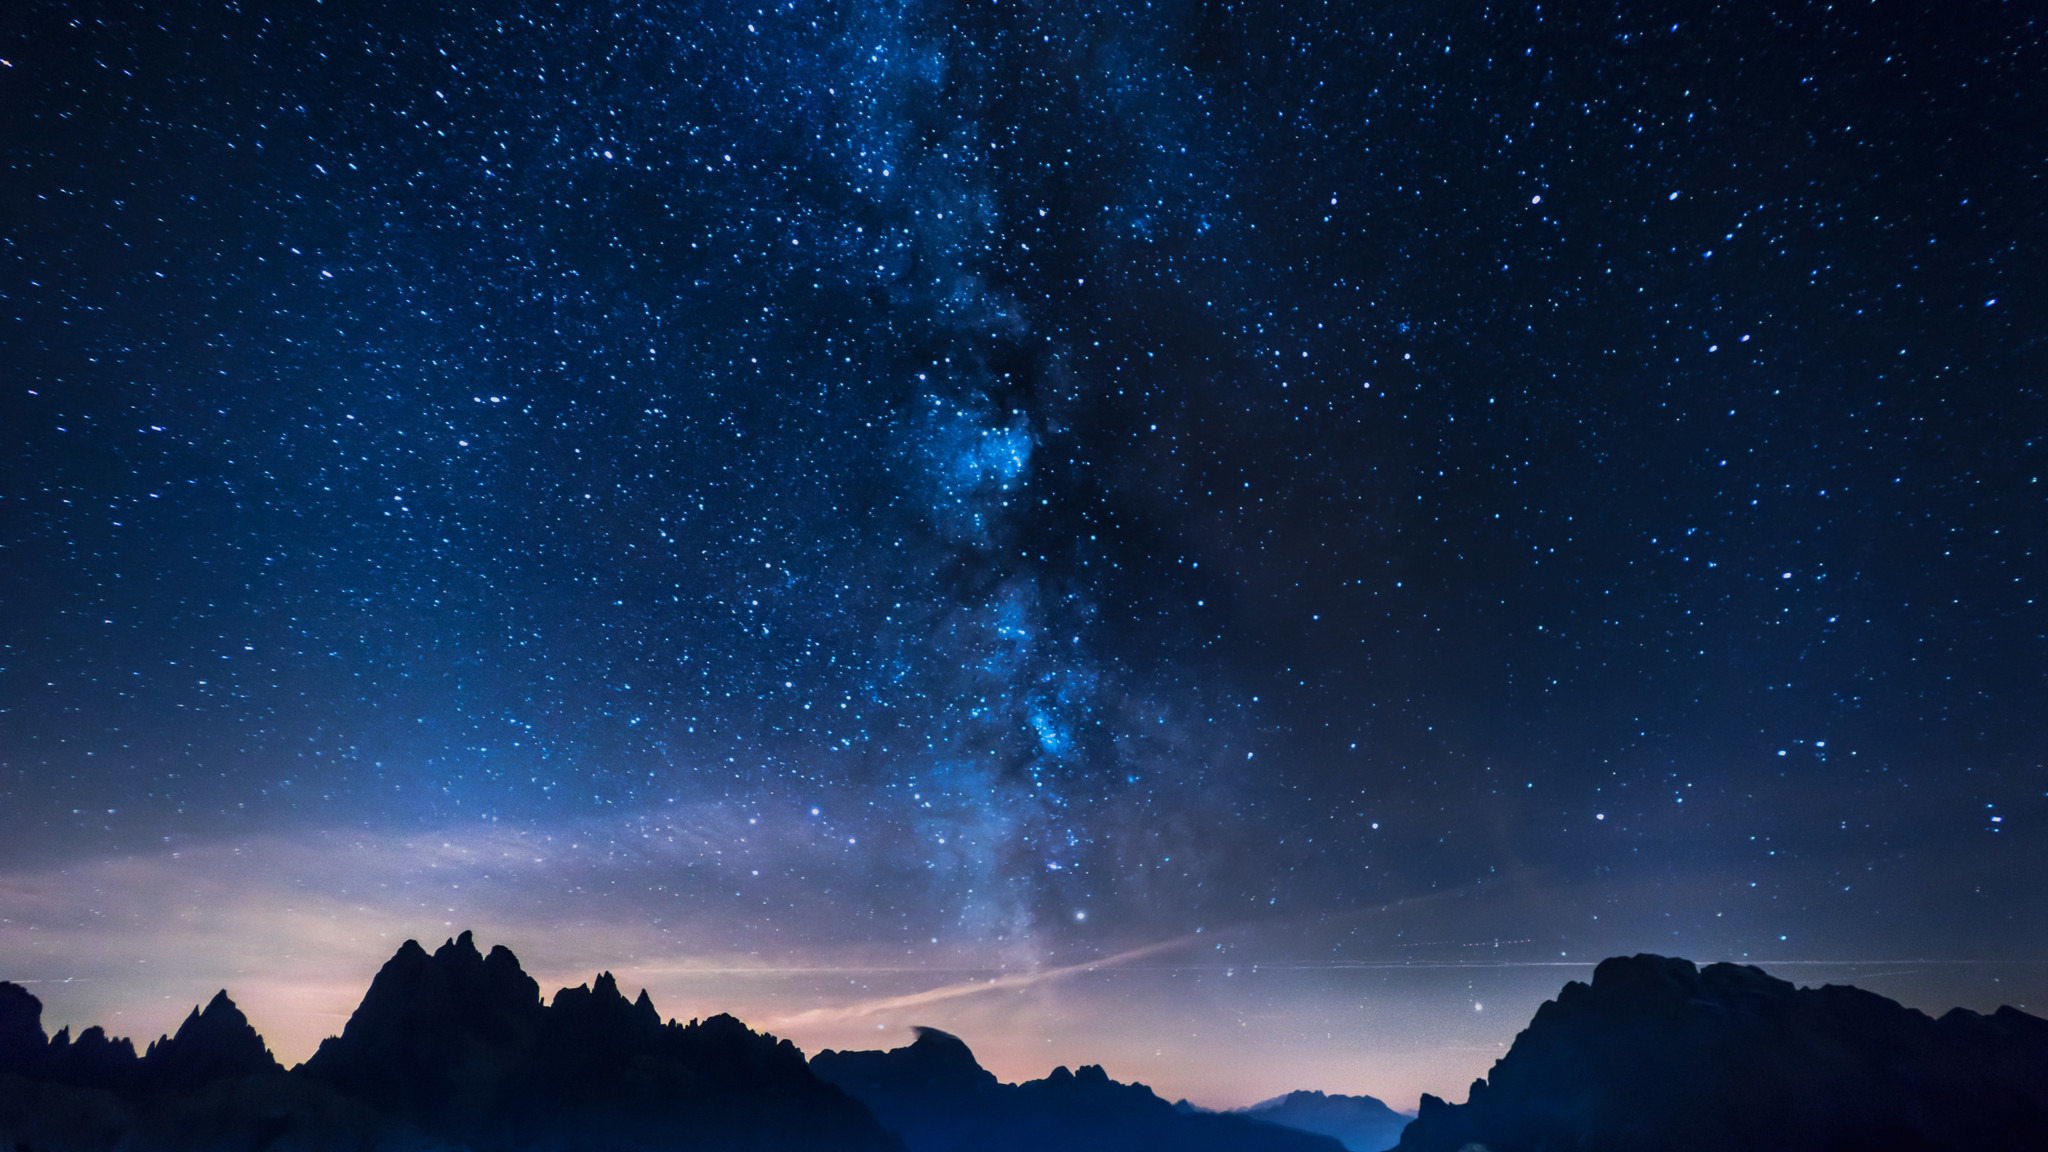 平成最後 の夏は 絶好の天体観測シーズン 8月は 夜空を見上げたくなる夏 J Com Tv では多彩な宇宙関連コンテンツを放送 J Comのプレスリリース